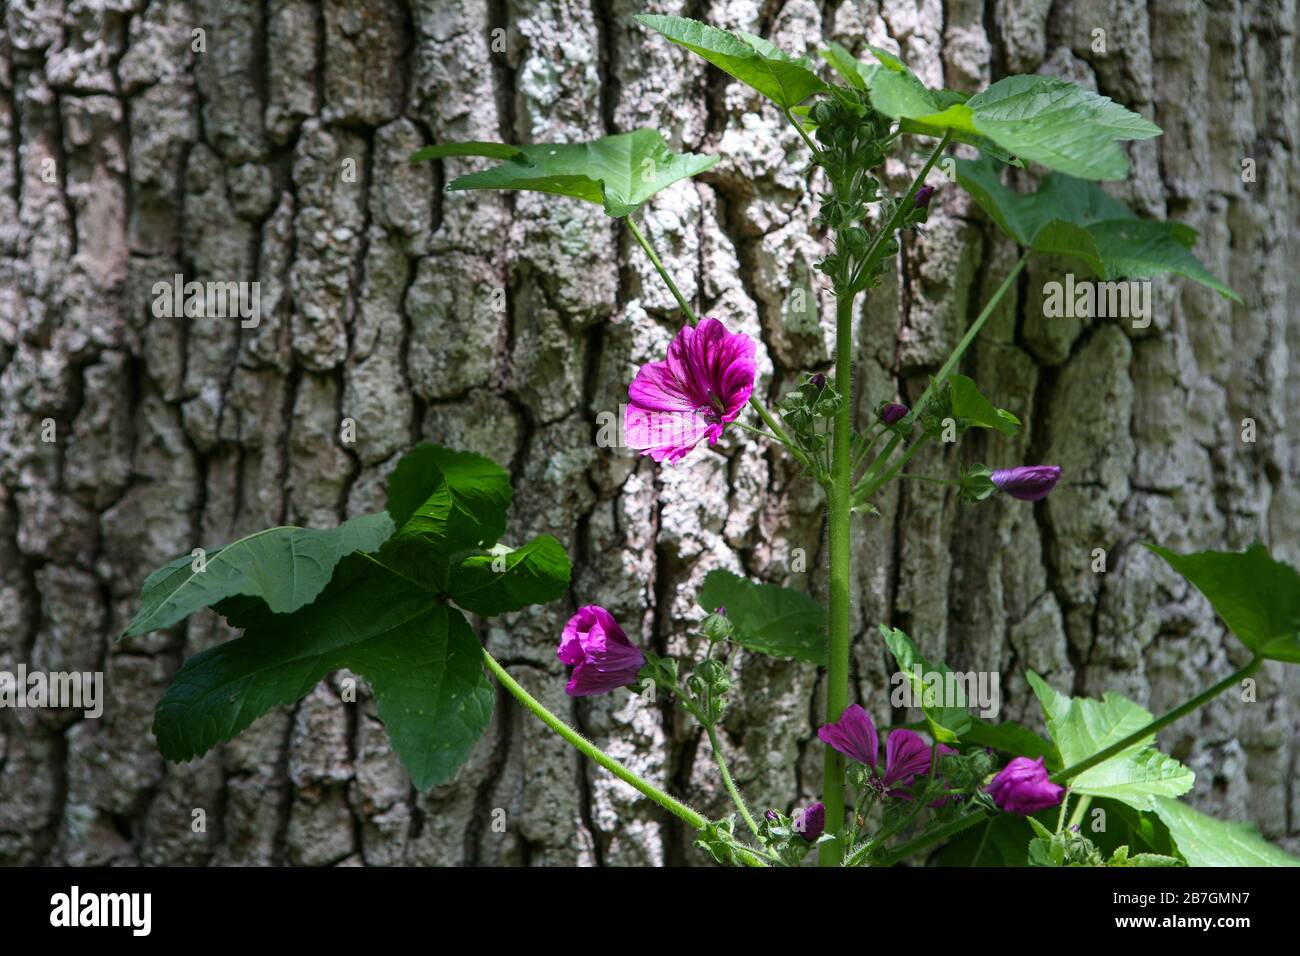 Malva sylvestris var.mauritiana / M. 'Mystic Merlin' / Malva francesa / Hollyhock Malva contra la corteza del árbol Foto de stock